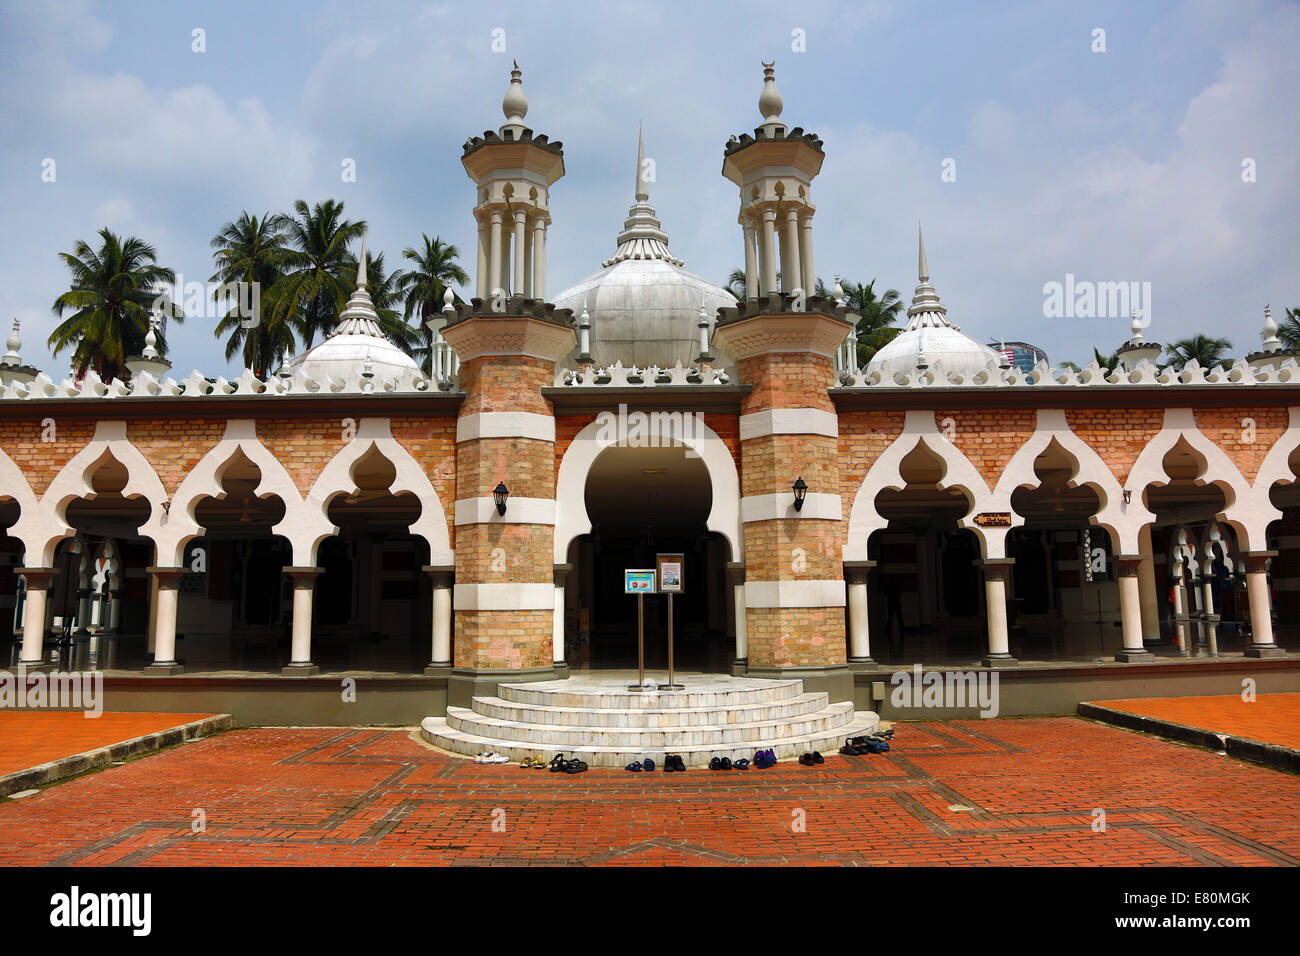 Masjid Jamek, the Jamed Mosque, in Kuala Lumpur, Malaysia Stock Photo